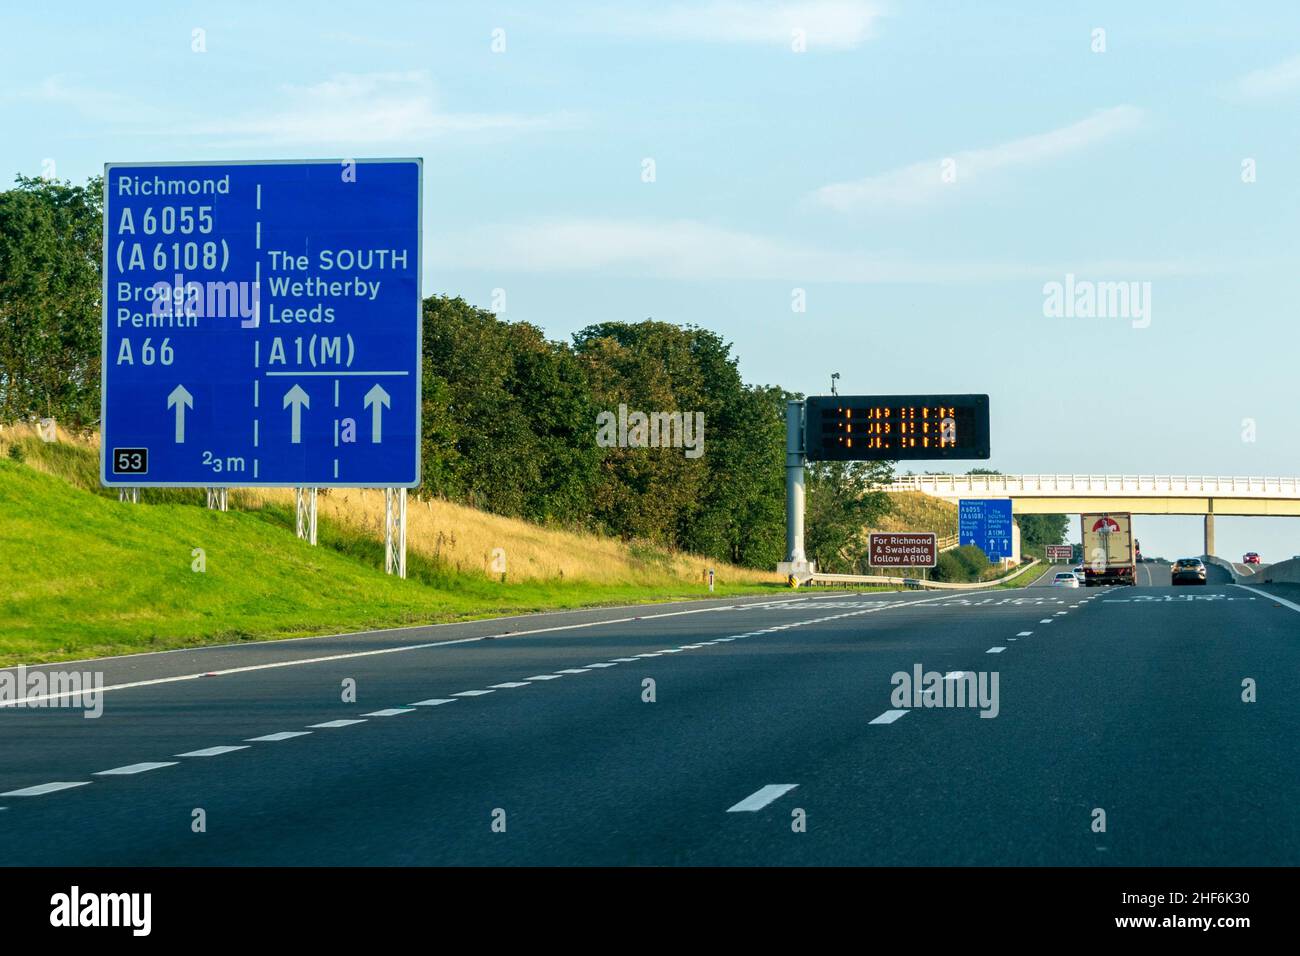 Leeds, Reino Unido - 23rd de agosto de 2019: Los coches conducen por la autopista británica A1 con señales azules de la autopista que dirigen a los conductores a Richmond, Leeds, Brough, Wetherby, Foto de stock